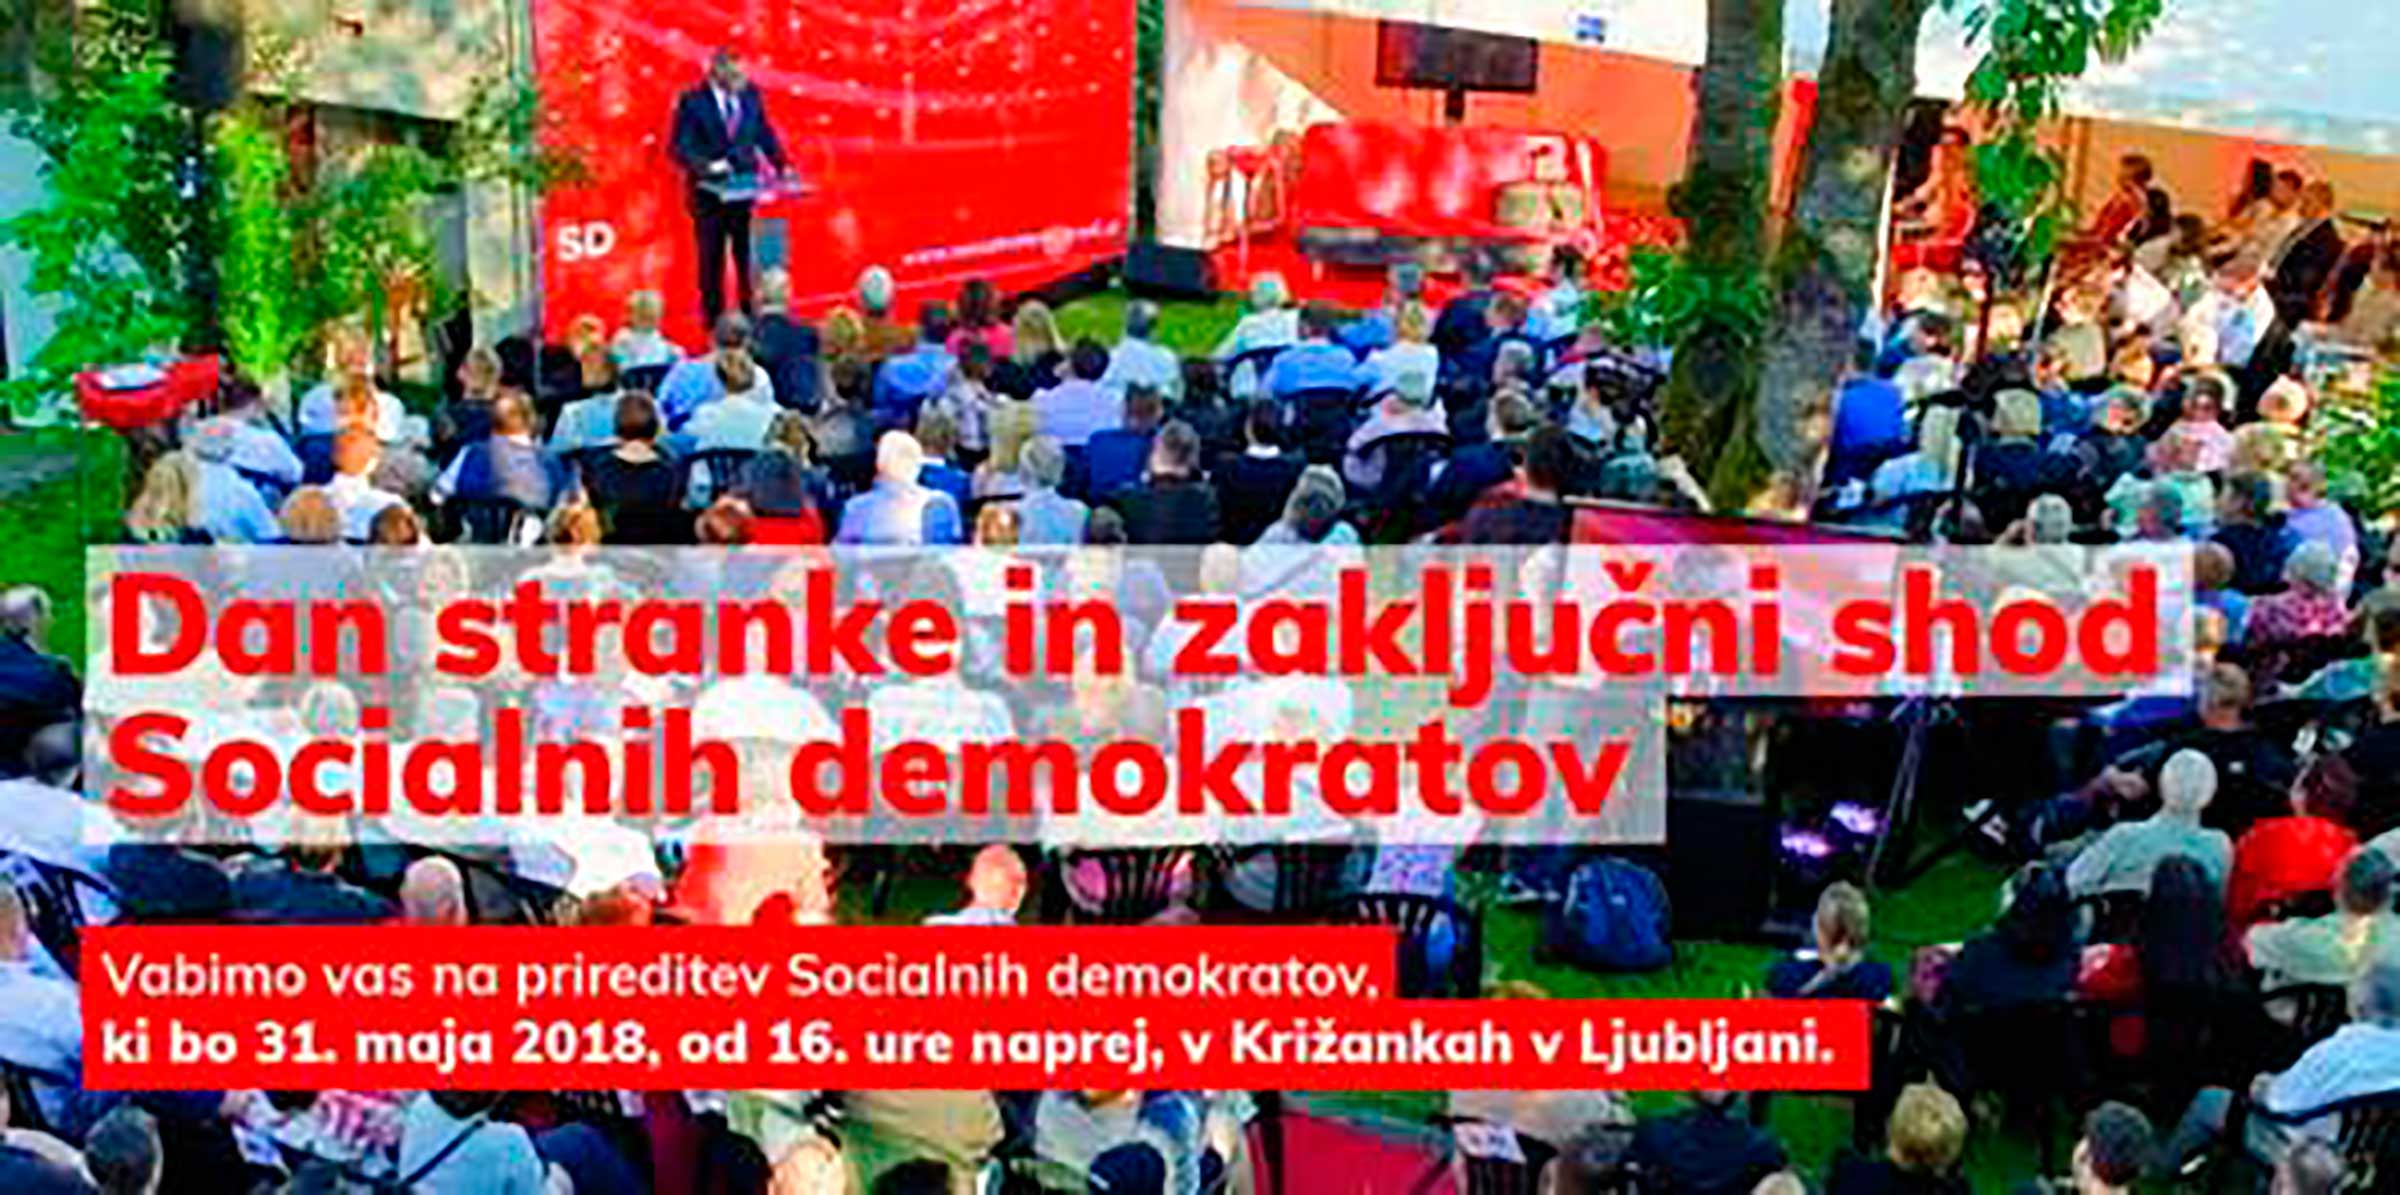 Dan stranke in zaključni shod Socialnih demokratov v Ljubljani